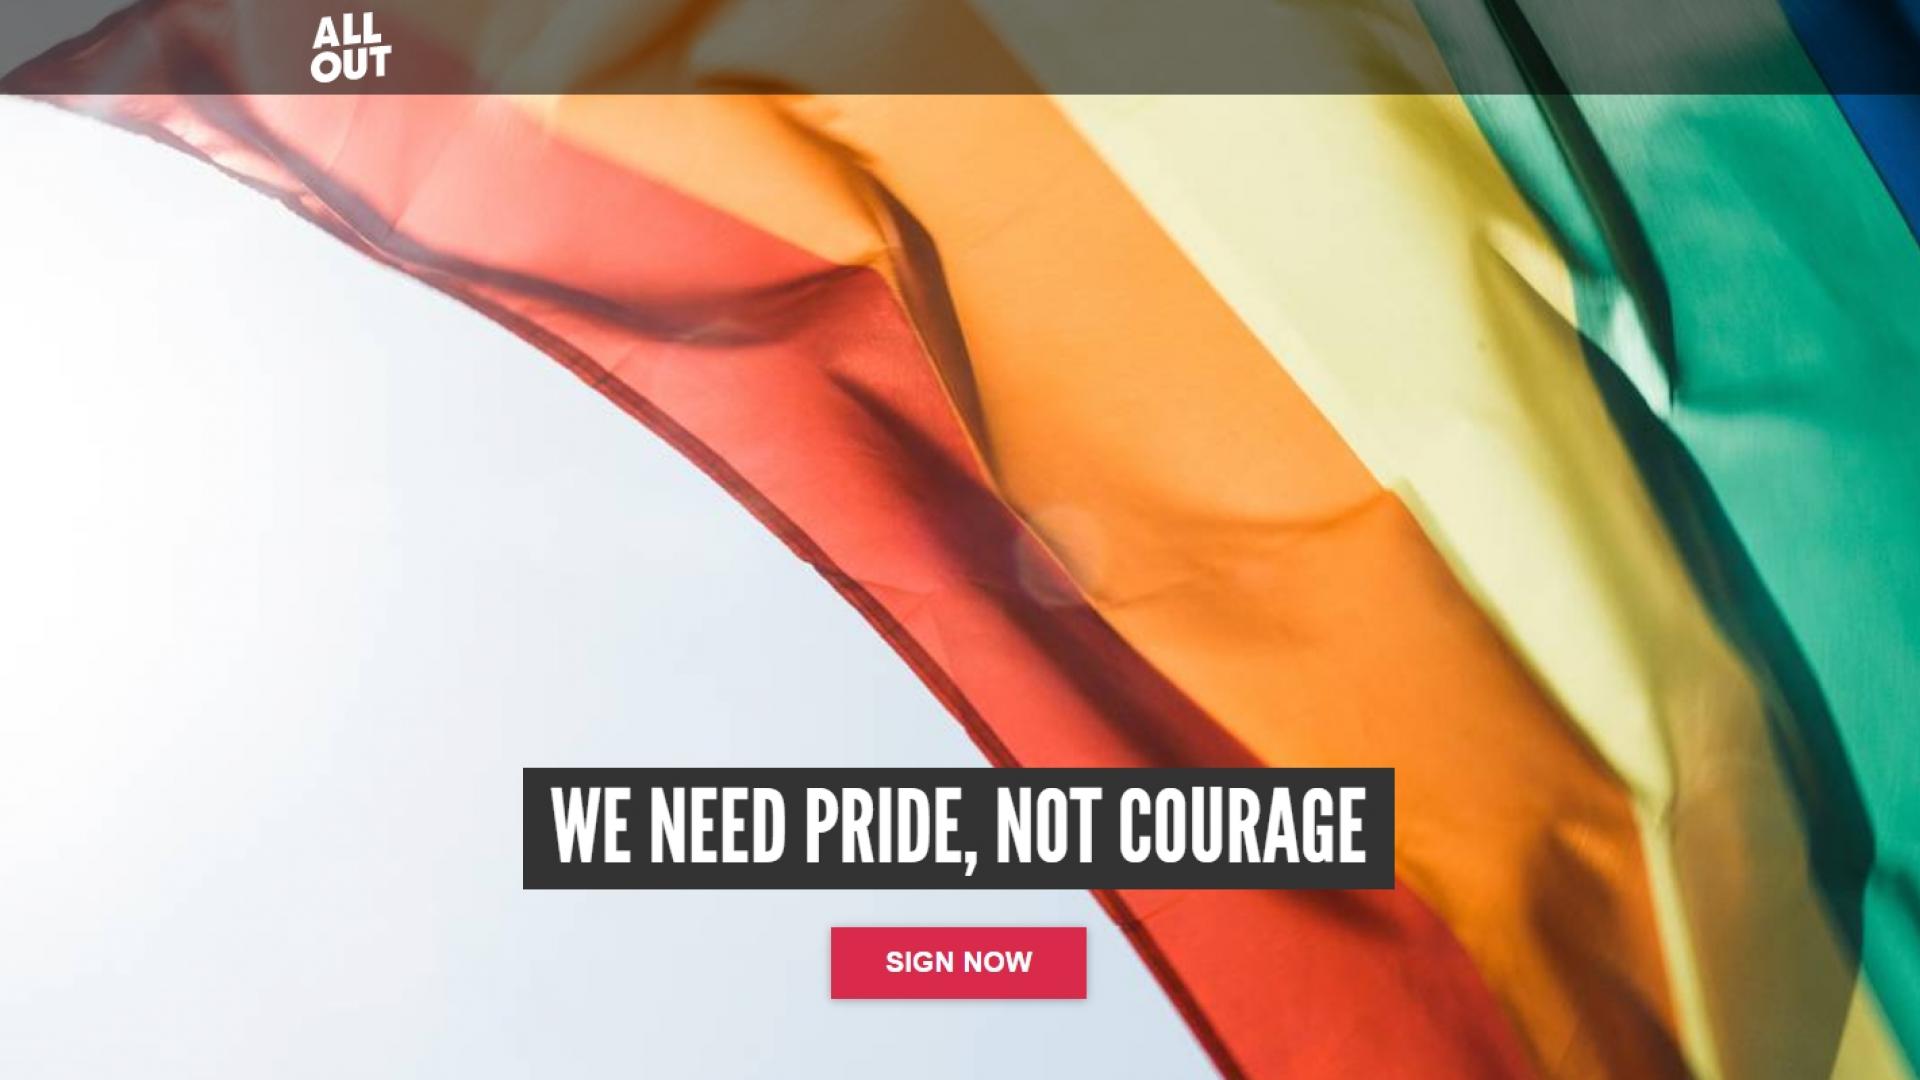 Wapperende regenboogvlag met de tekst van AllOut: "We need Pride, not Courage"